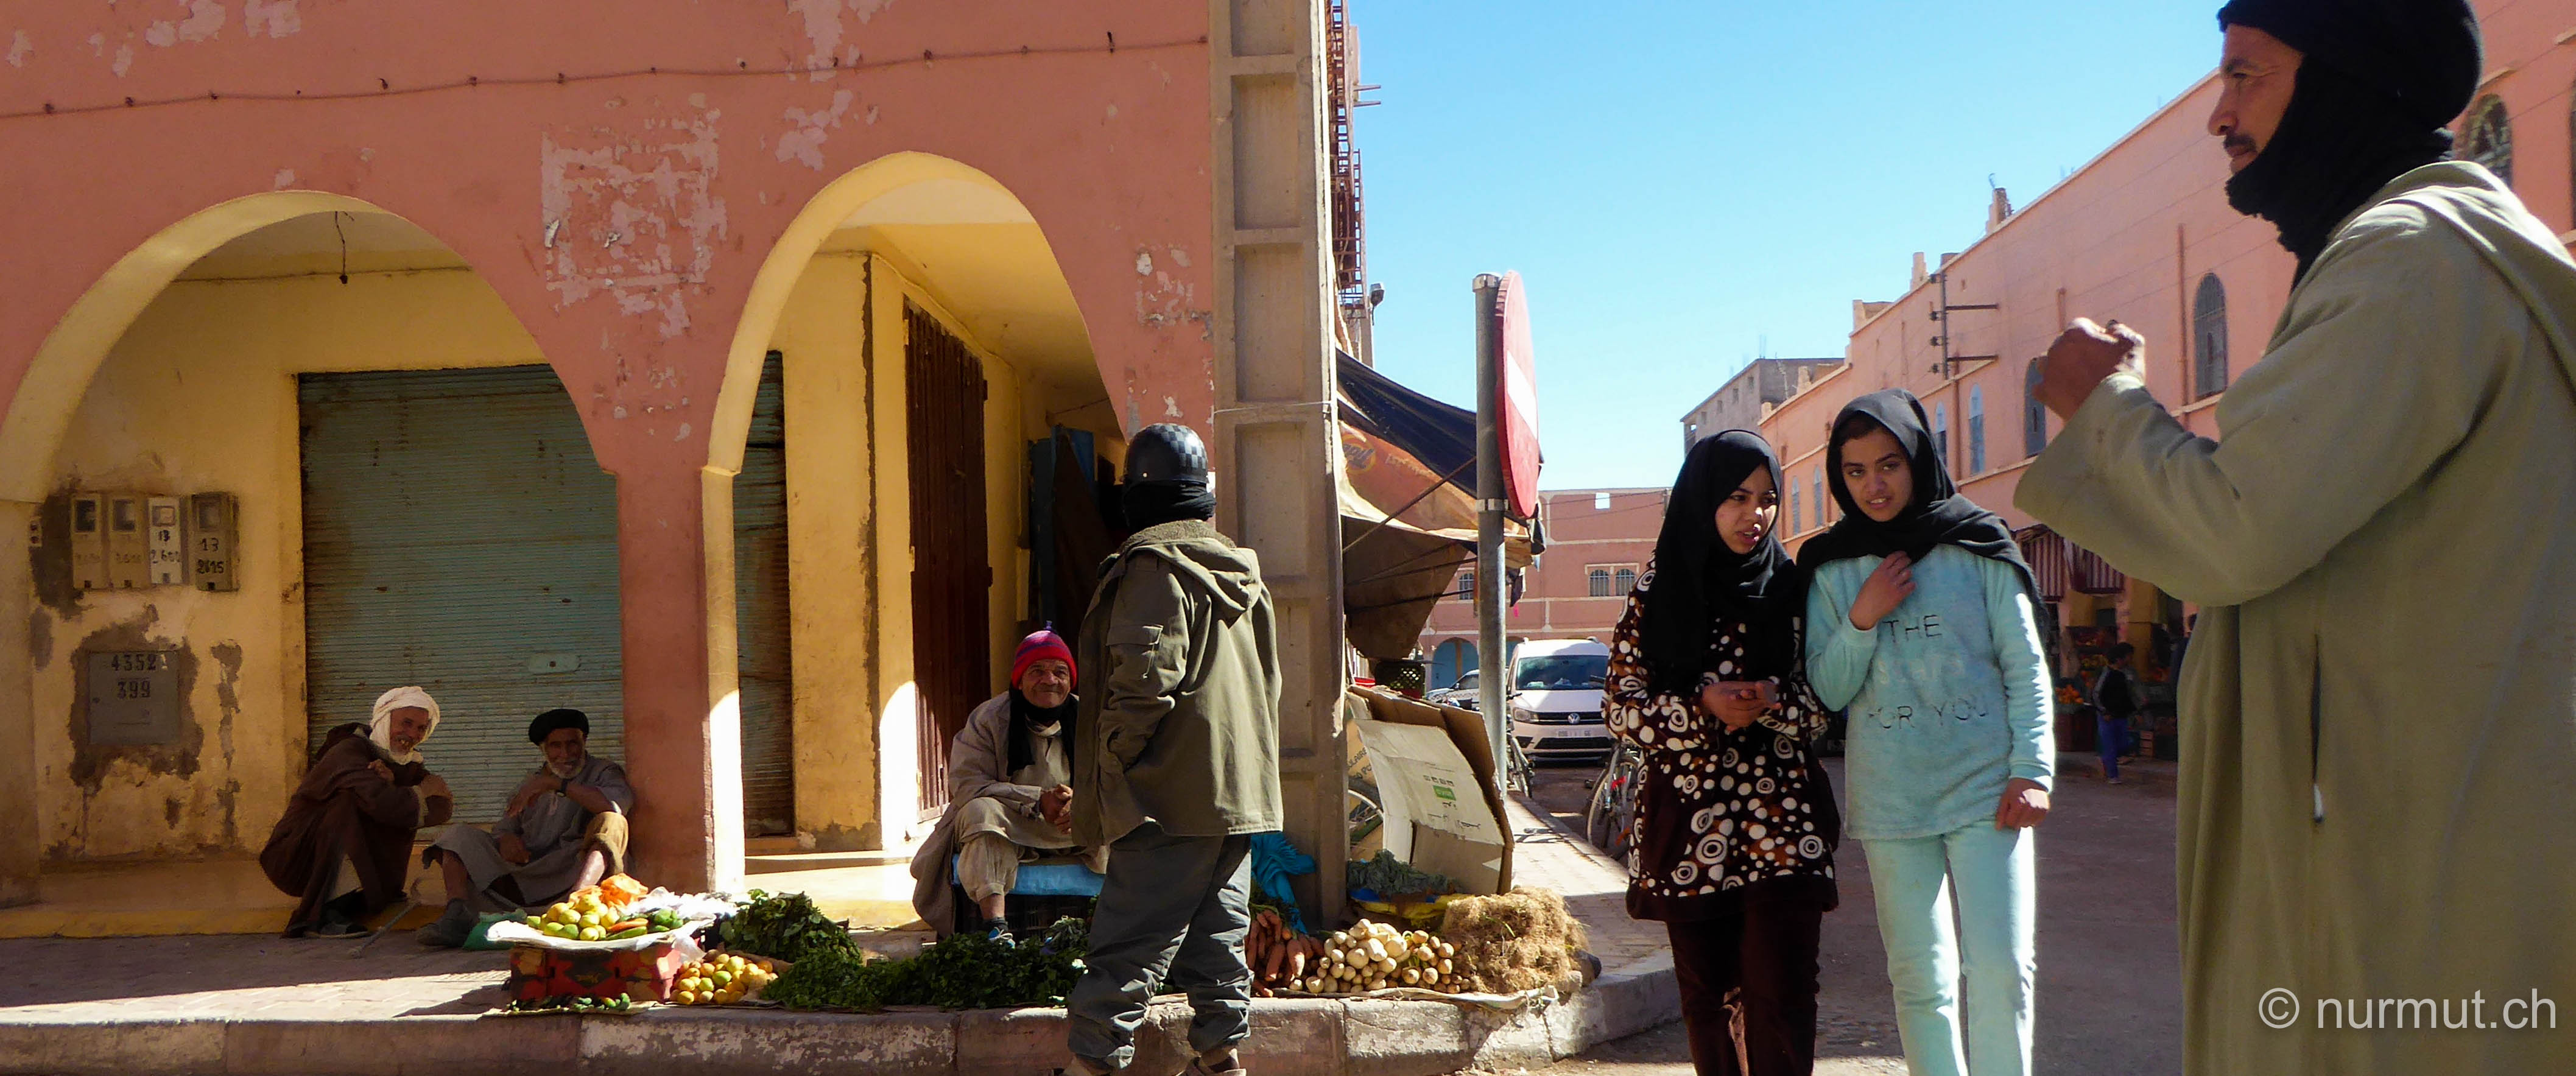 im winter in marokko-nurmut-tata-marokko-marokkaner-berber-strassenmarkt